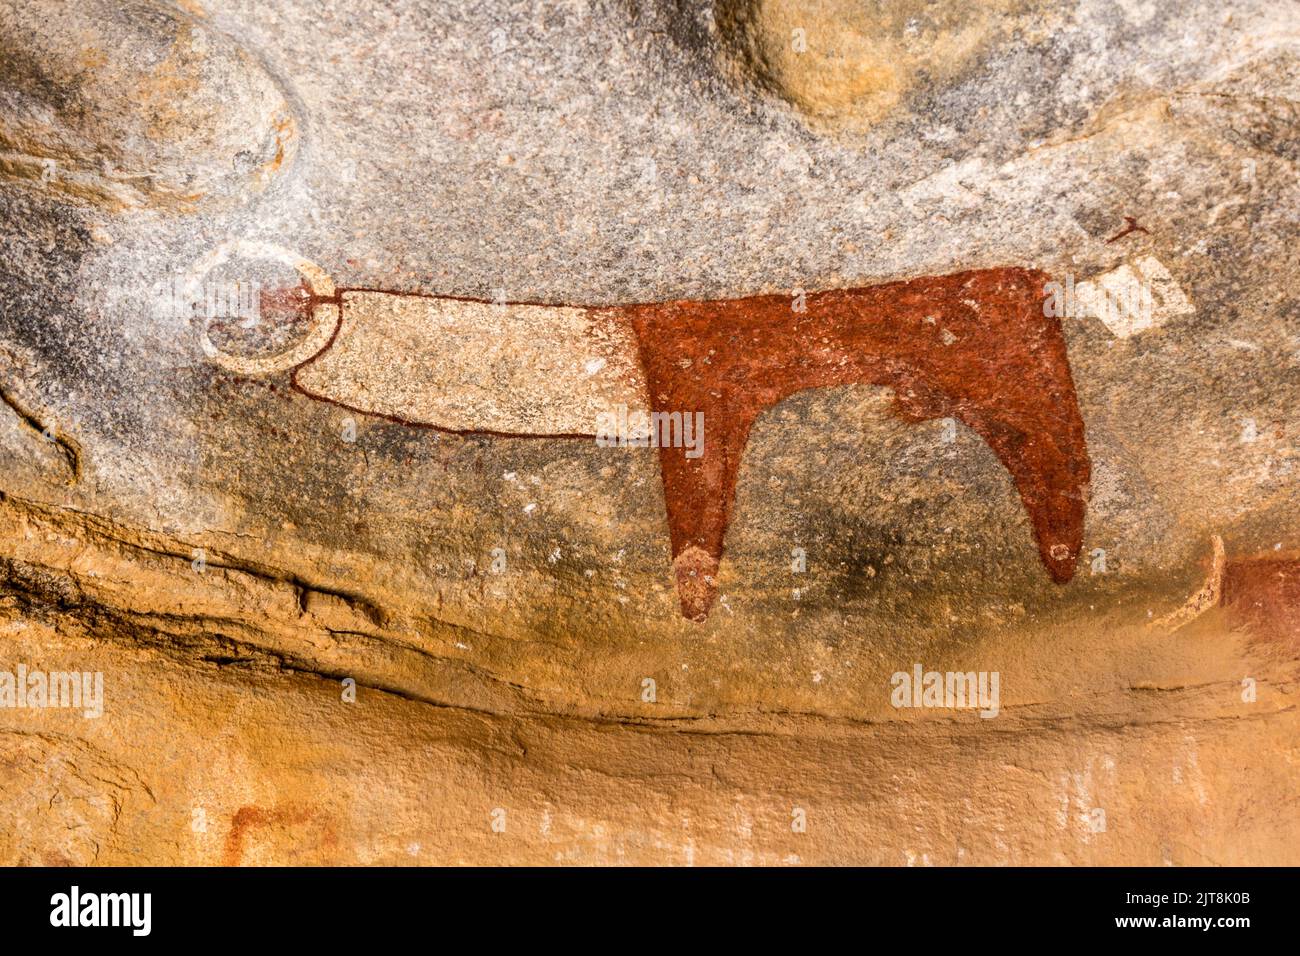 Laas Geel rock paintings depicting aurochs, Somaliland Stock Photo